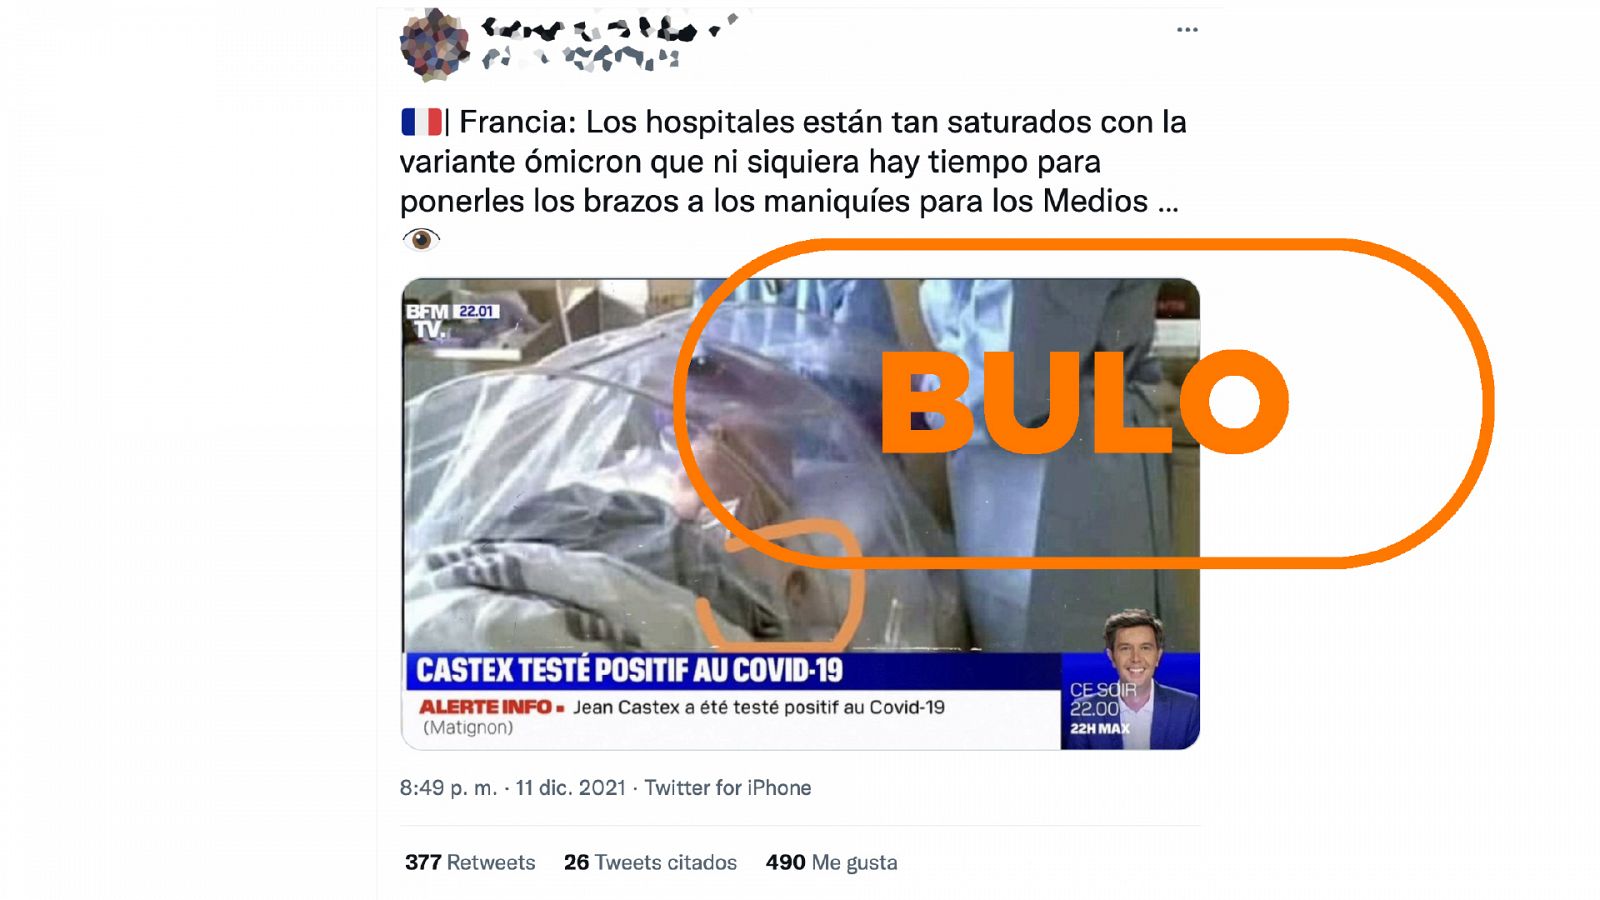 Mensaje de Twitter que dice que en Francia presentan a un maniquí como paciente hospitalizado por ómicron, con el sello bulo en naranja de VerificaRTVE